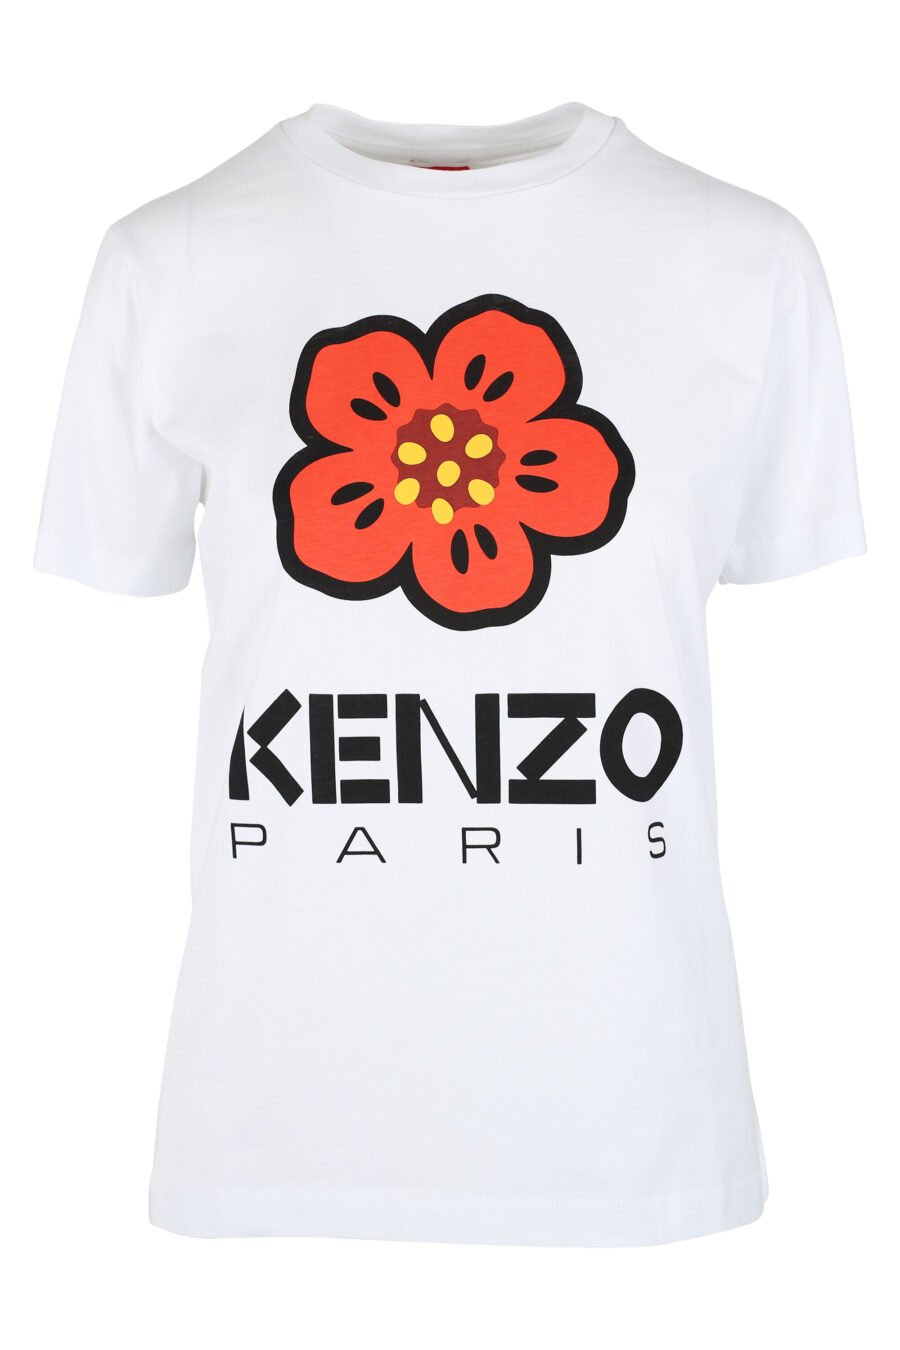 Weißes T-Shirt mit orangefarbenem Blumen-Maxilogo - IMG 9528